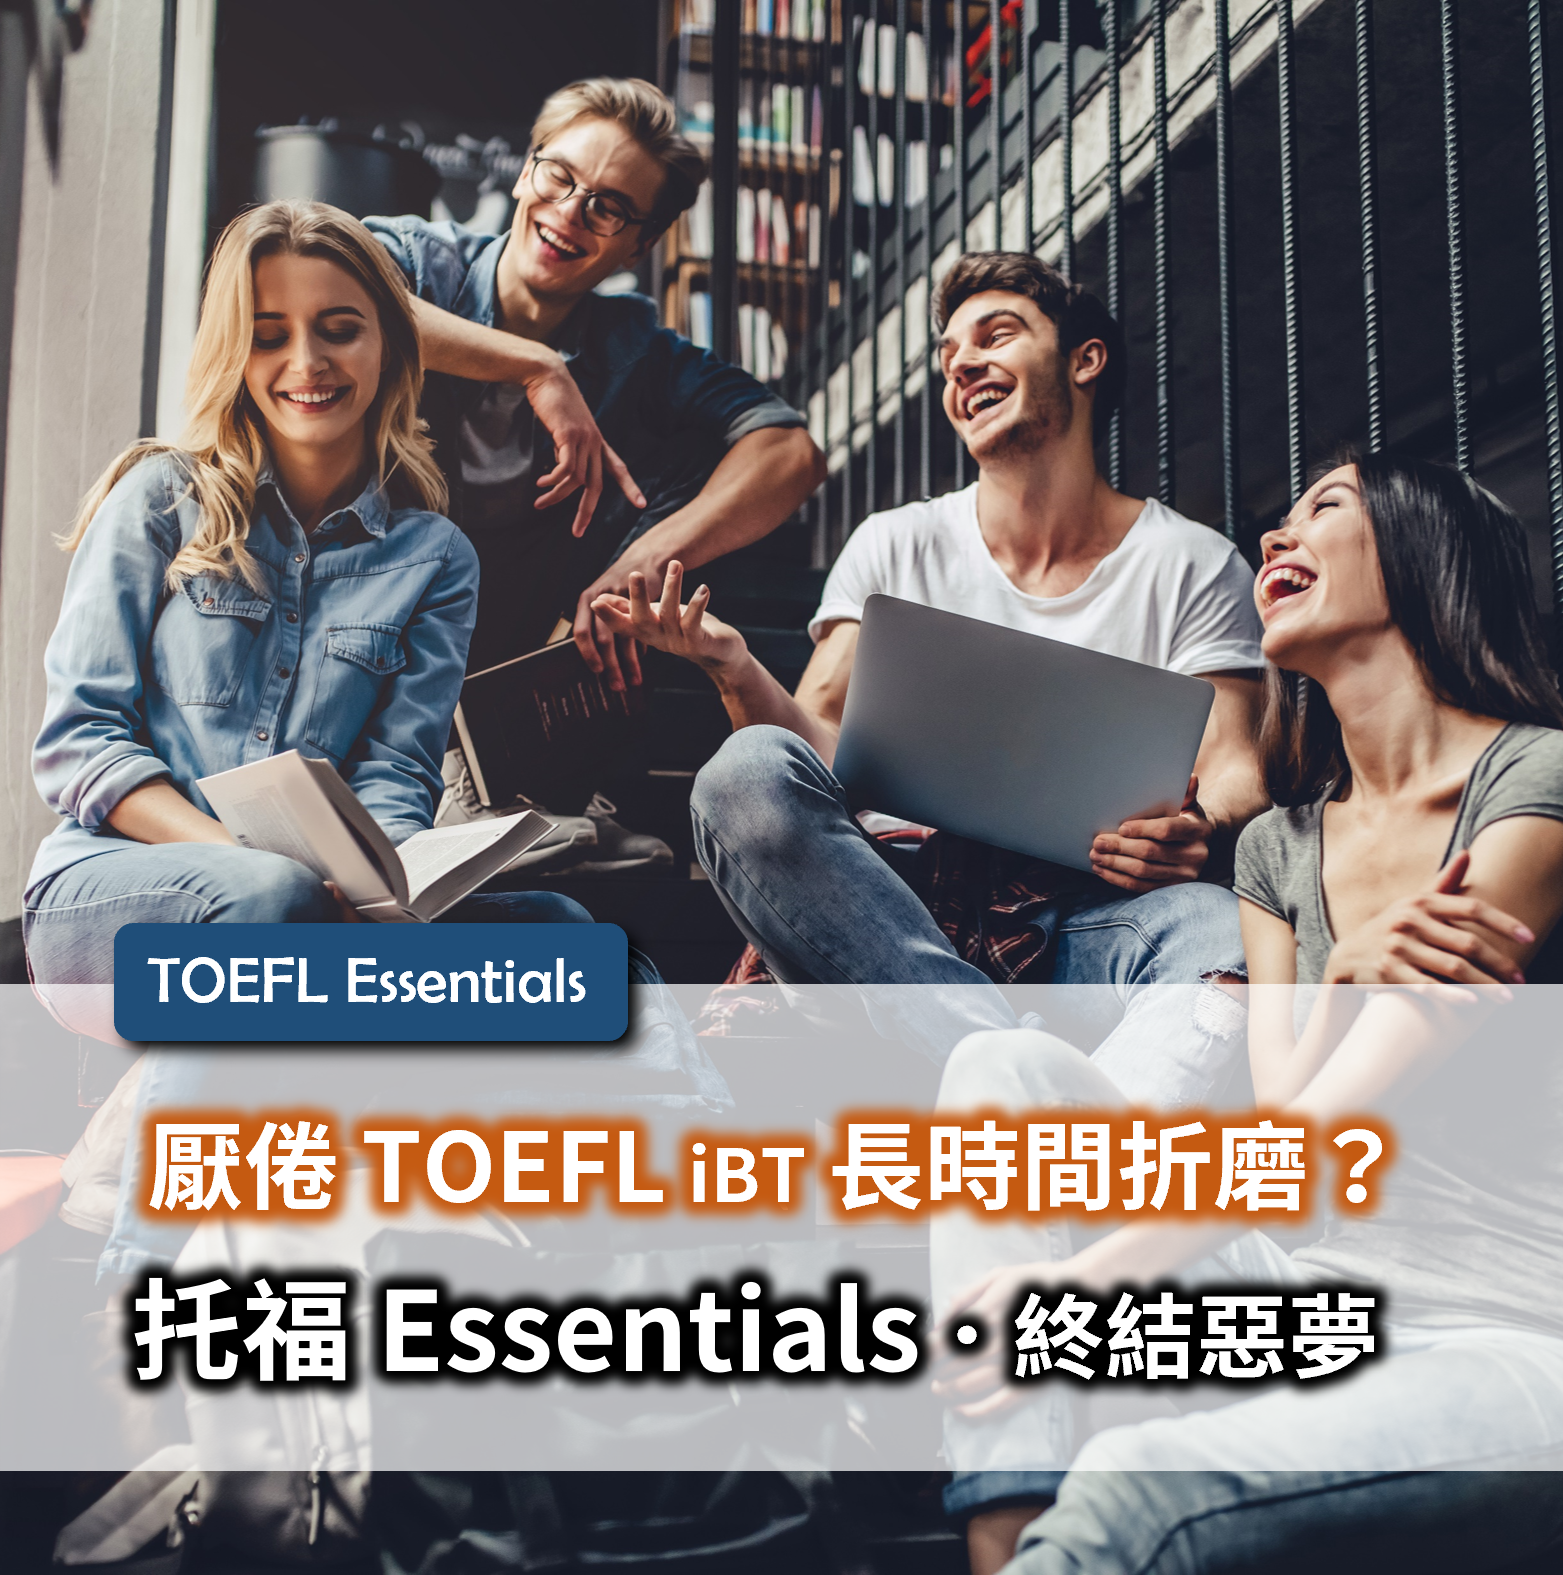 托福, 托福Essentials, 托福iBT, TOEFL Essentials, TOEFL iBT, TOEFL